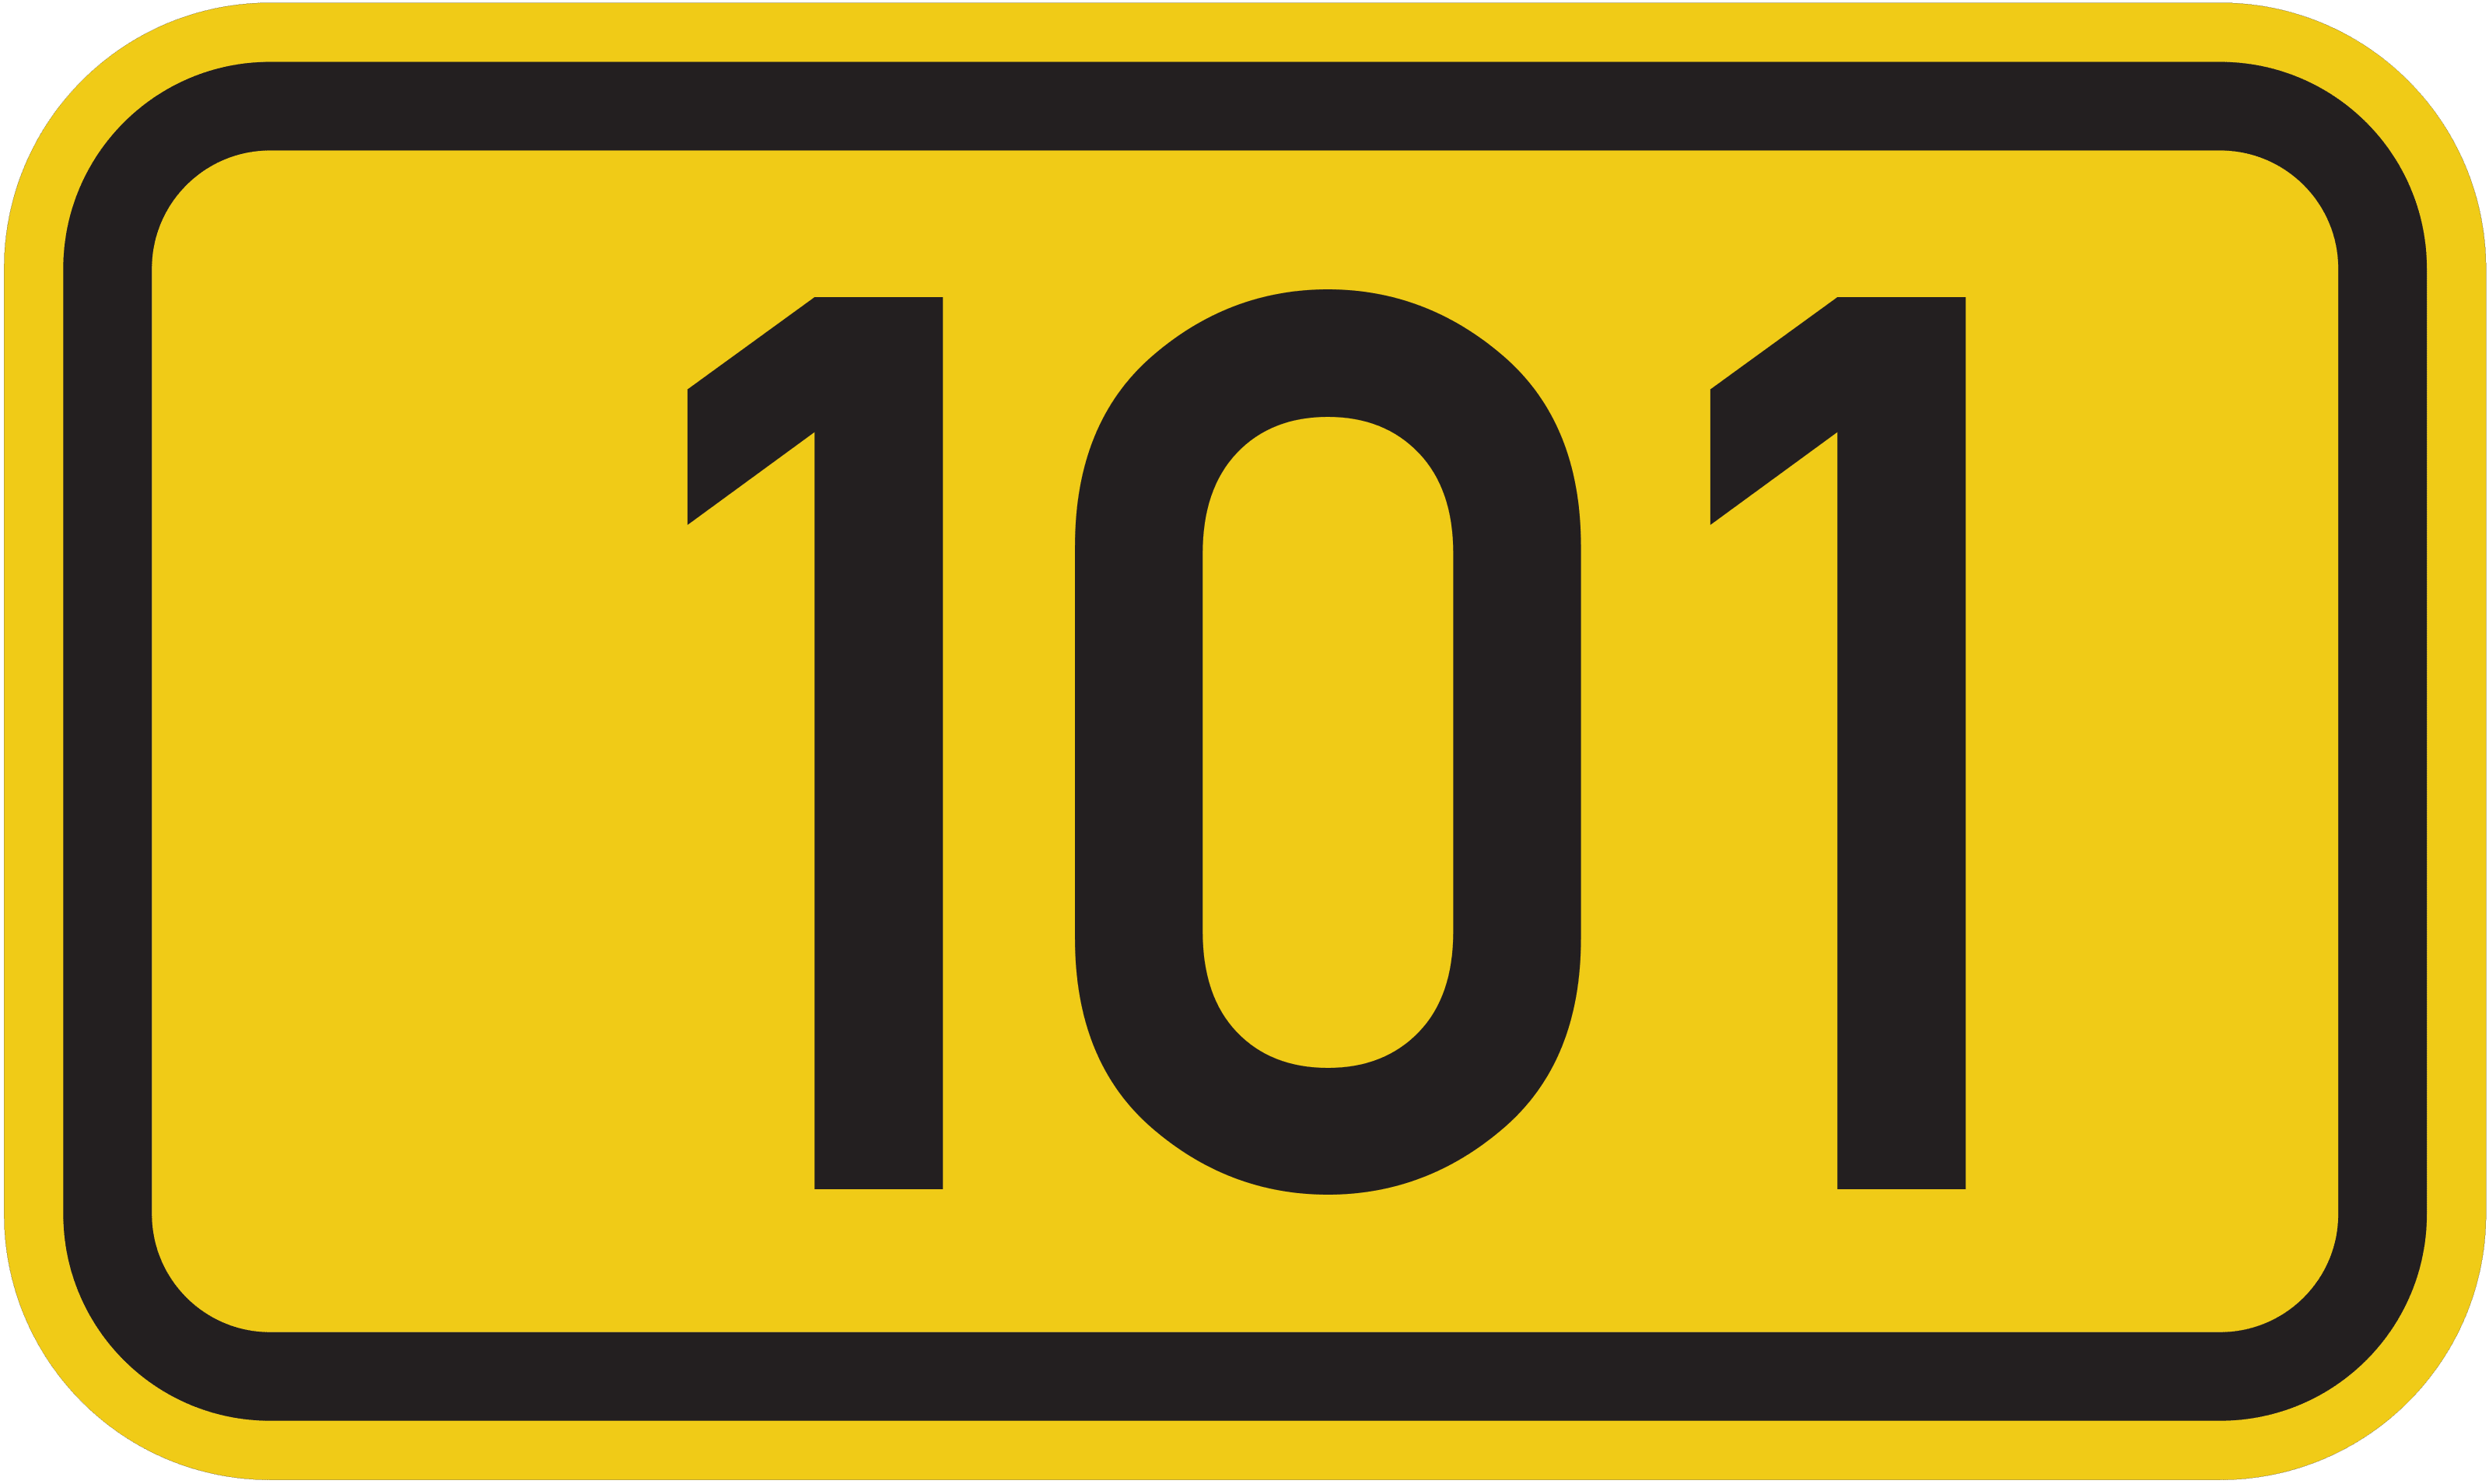 Bundesstraße B 101